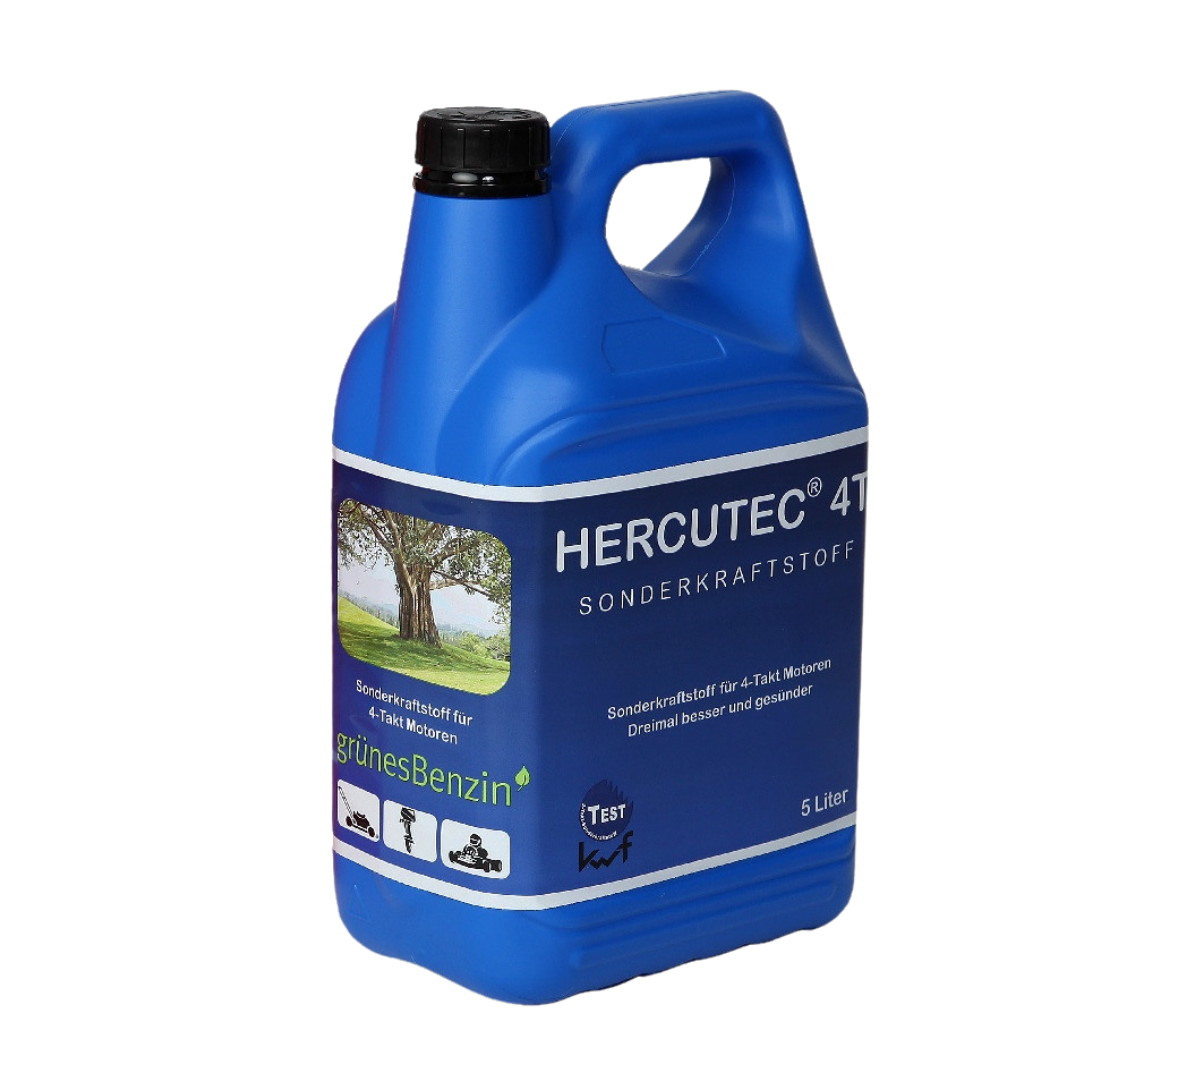 Hercutec 4-takt Alkylaatbrandstof, 5 liter